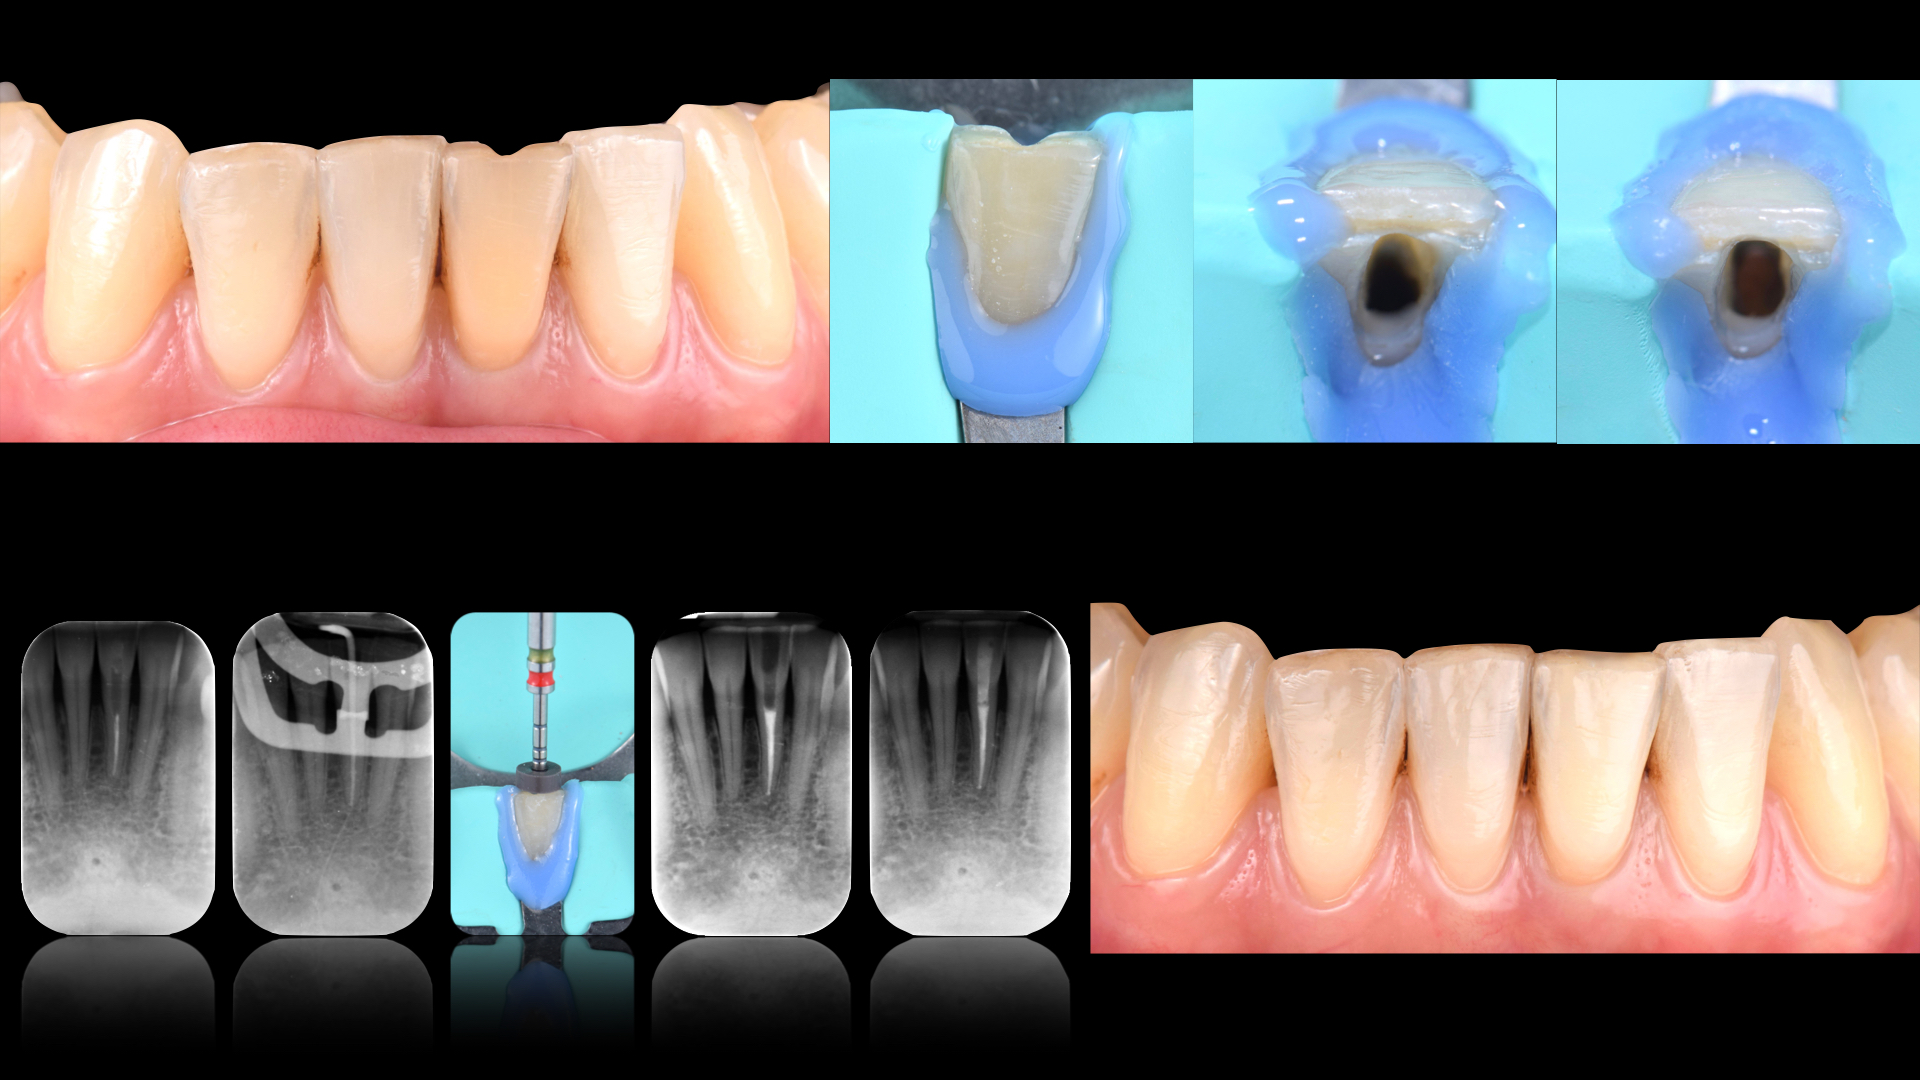 Caso clinico Dr. Pittaluga sulla terapia canalare del dente incisivo